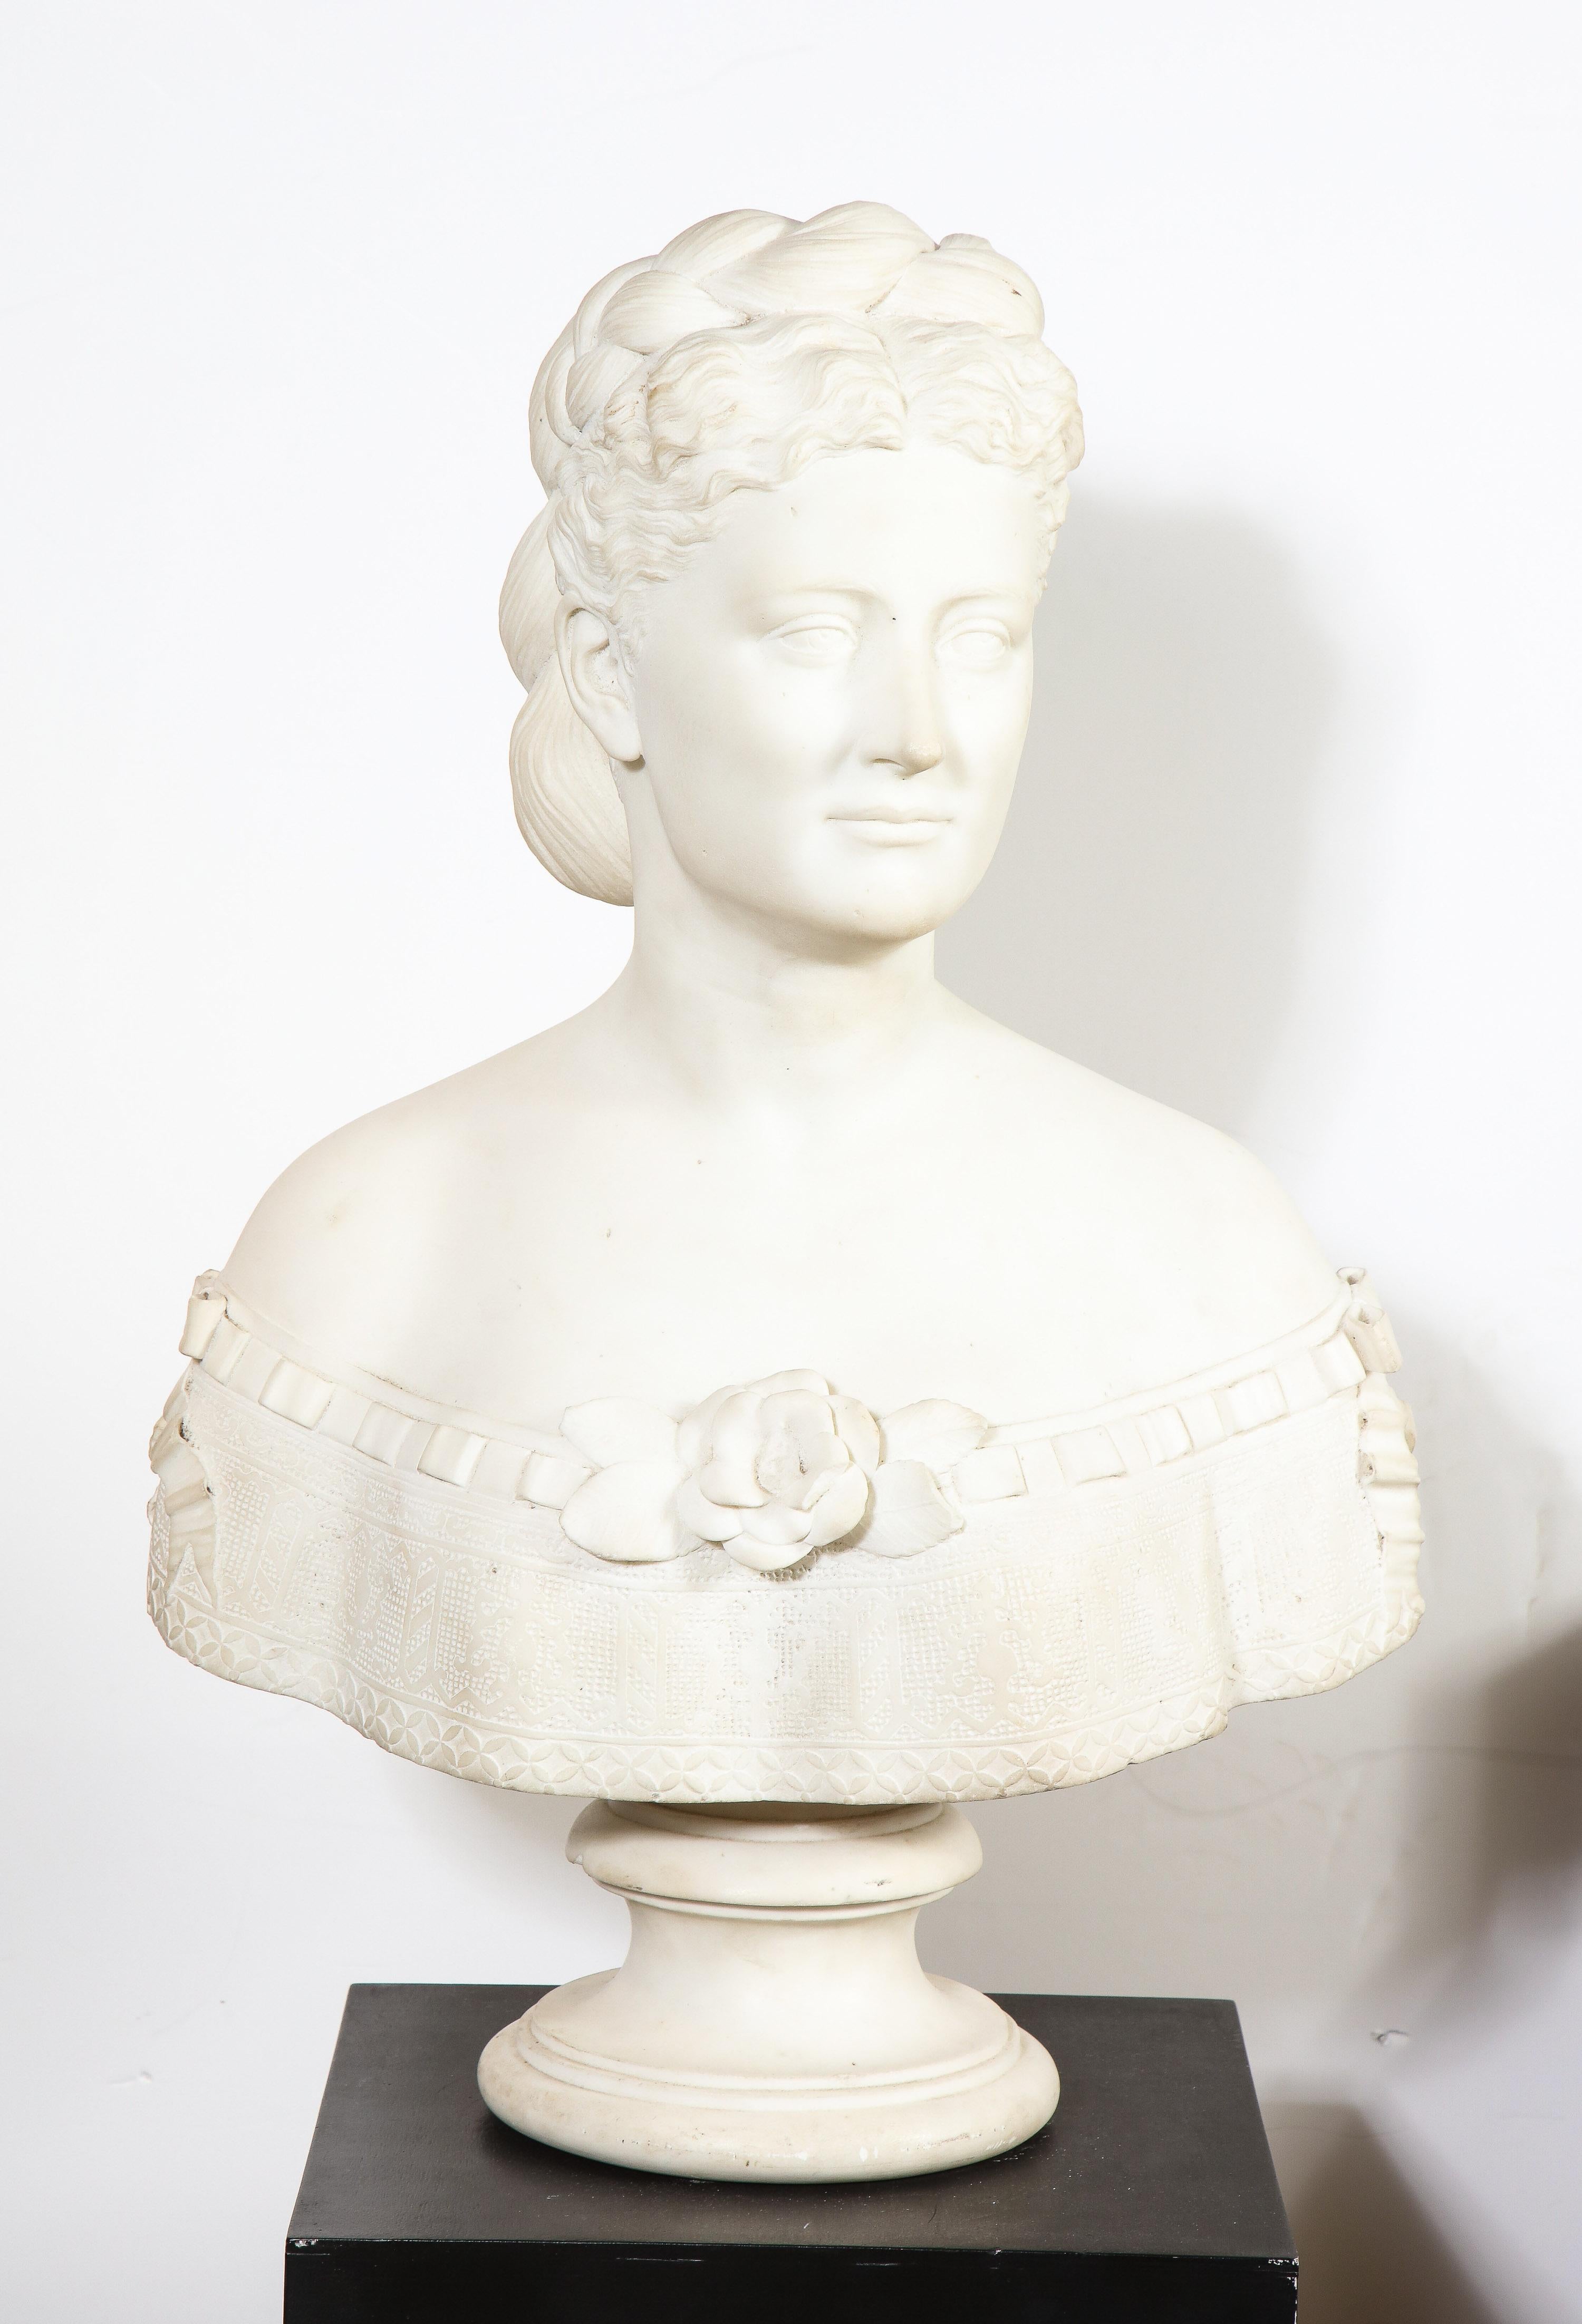 Buste extrêmement rare de femme en marbre blanc américain de Thomas Ridgeway Gould (1818-1881), datant d'environ 1870.

Représentation d'une belle femme aux cheveux séparés et tressés en chignon. Très belle qualité, chef-d'œuvre, sculpture de